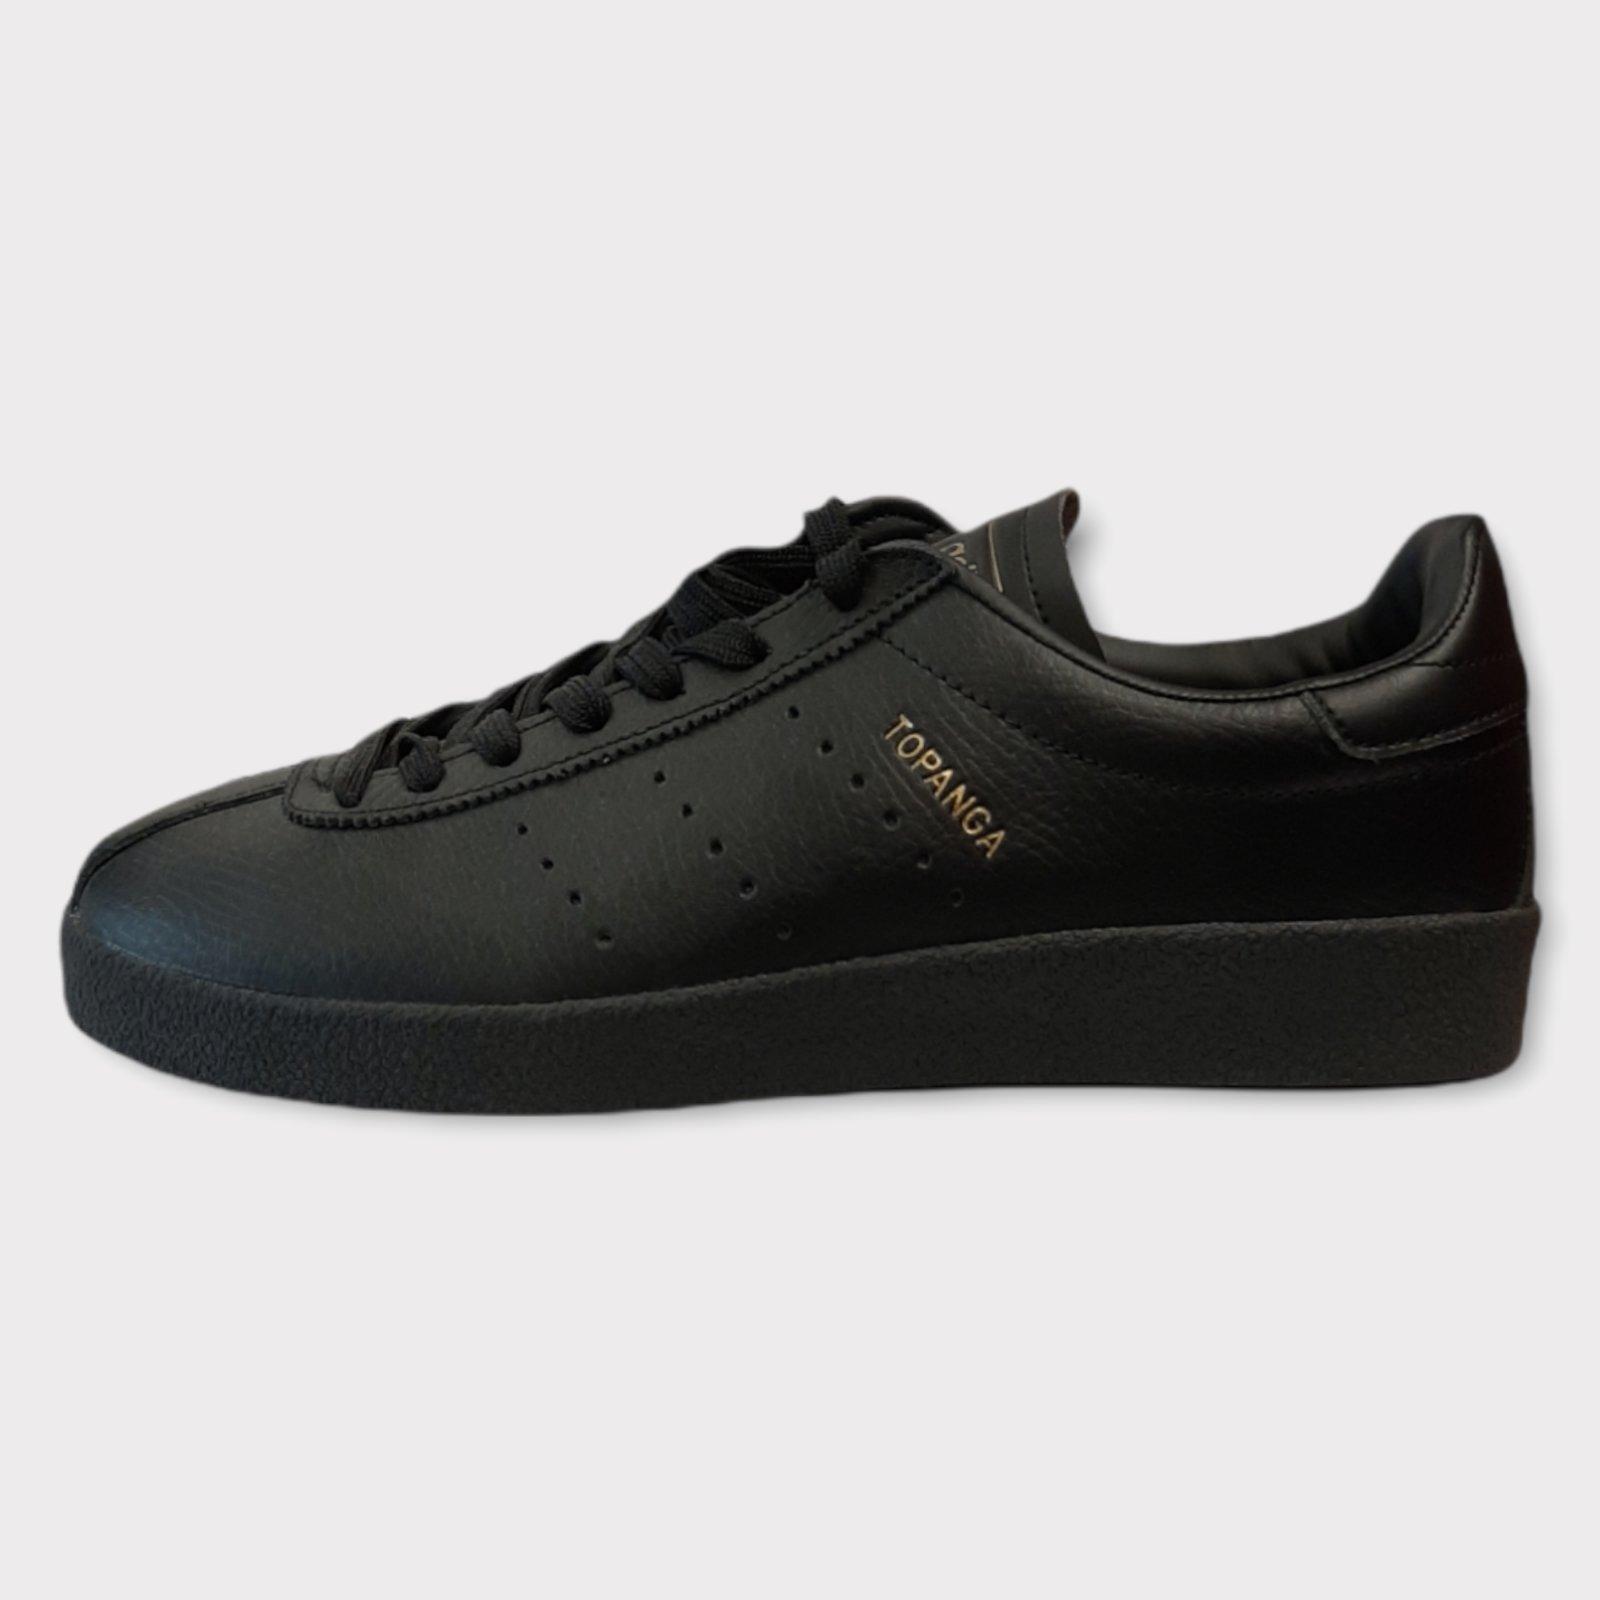 Topanga adidas black sneaker shoes